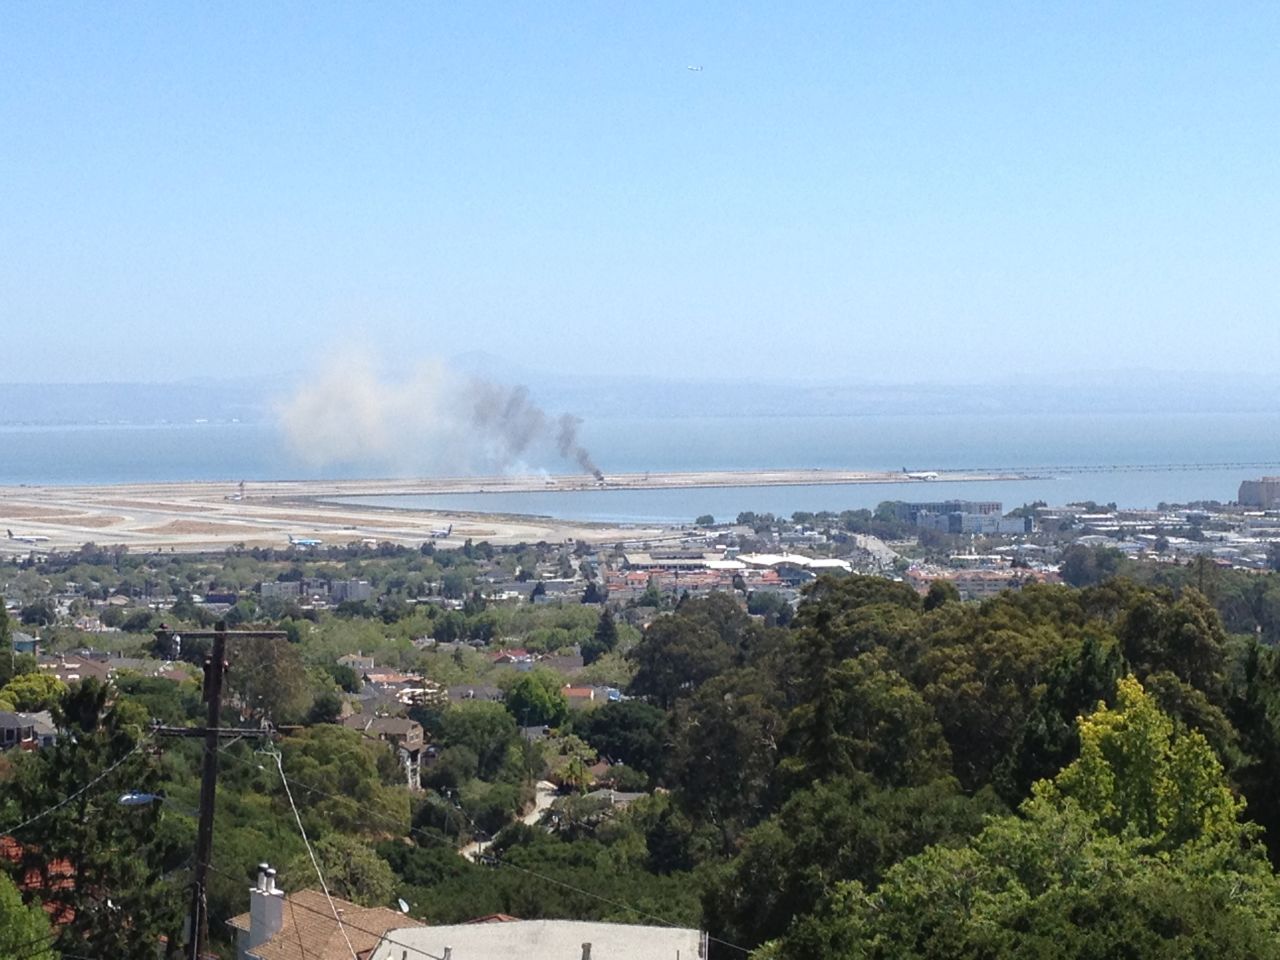 Sven Duenwald se encontraba en casa cuando vio humo en el aire cerca del aeropuerto internacional de San Francisco.